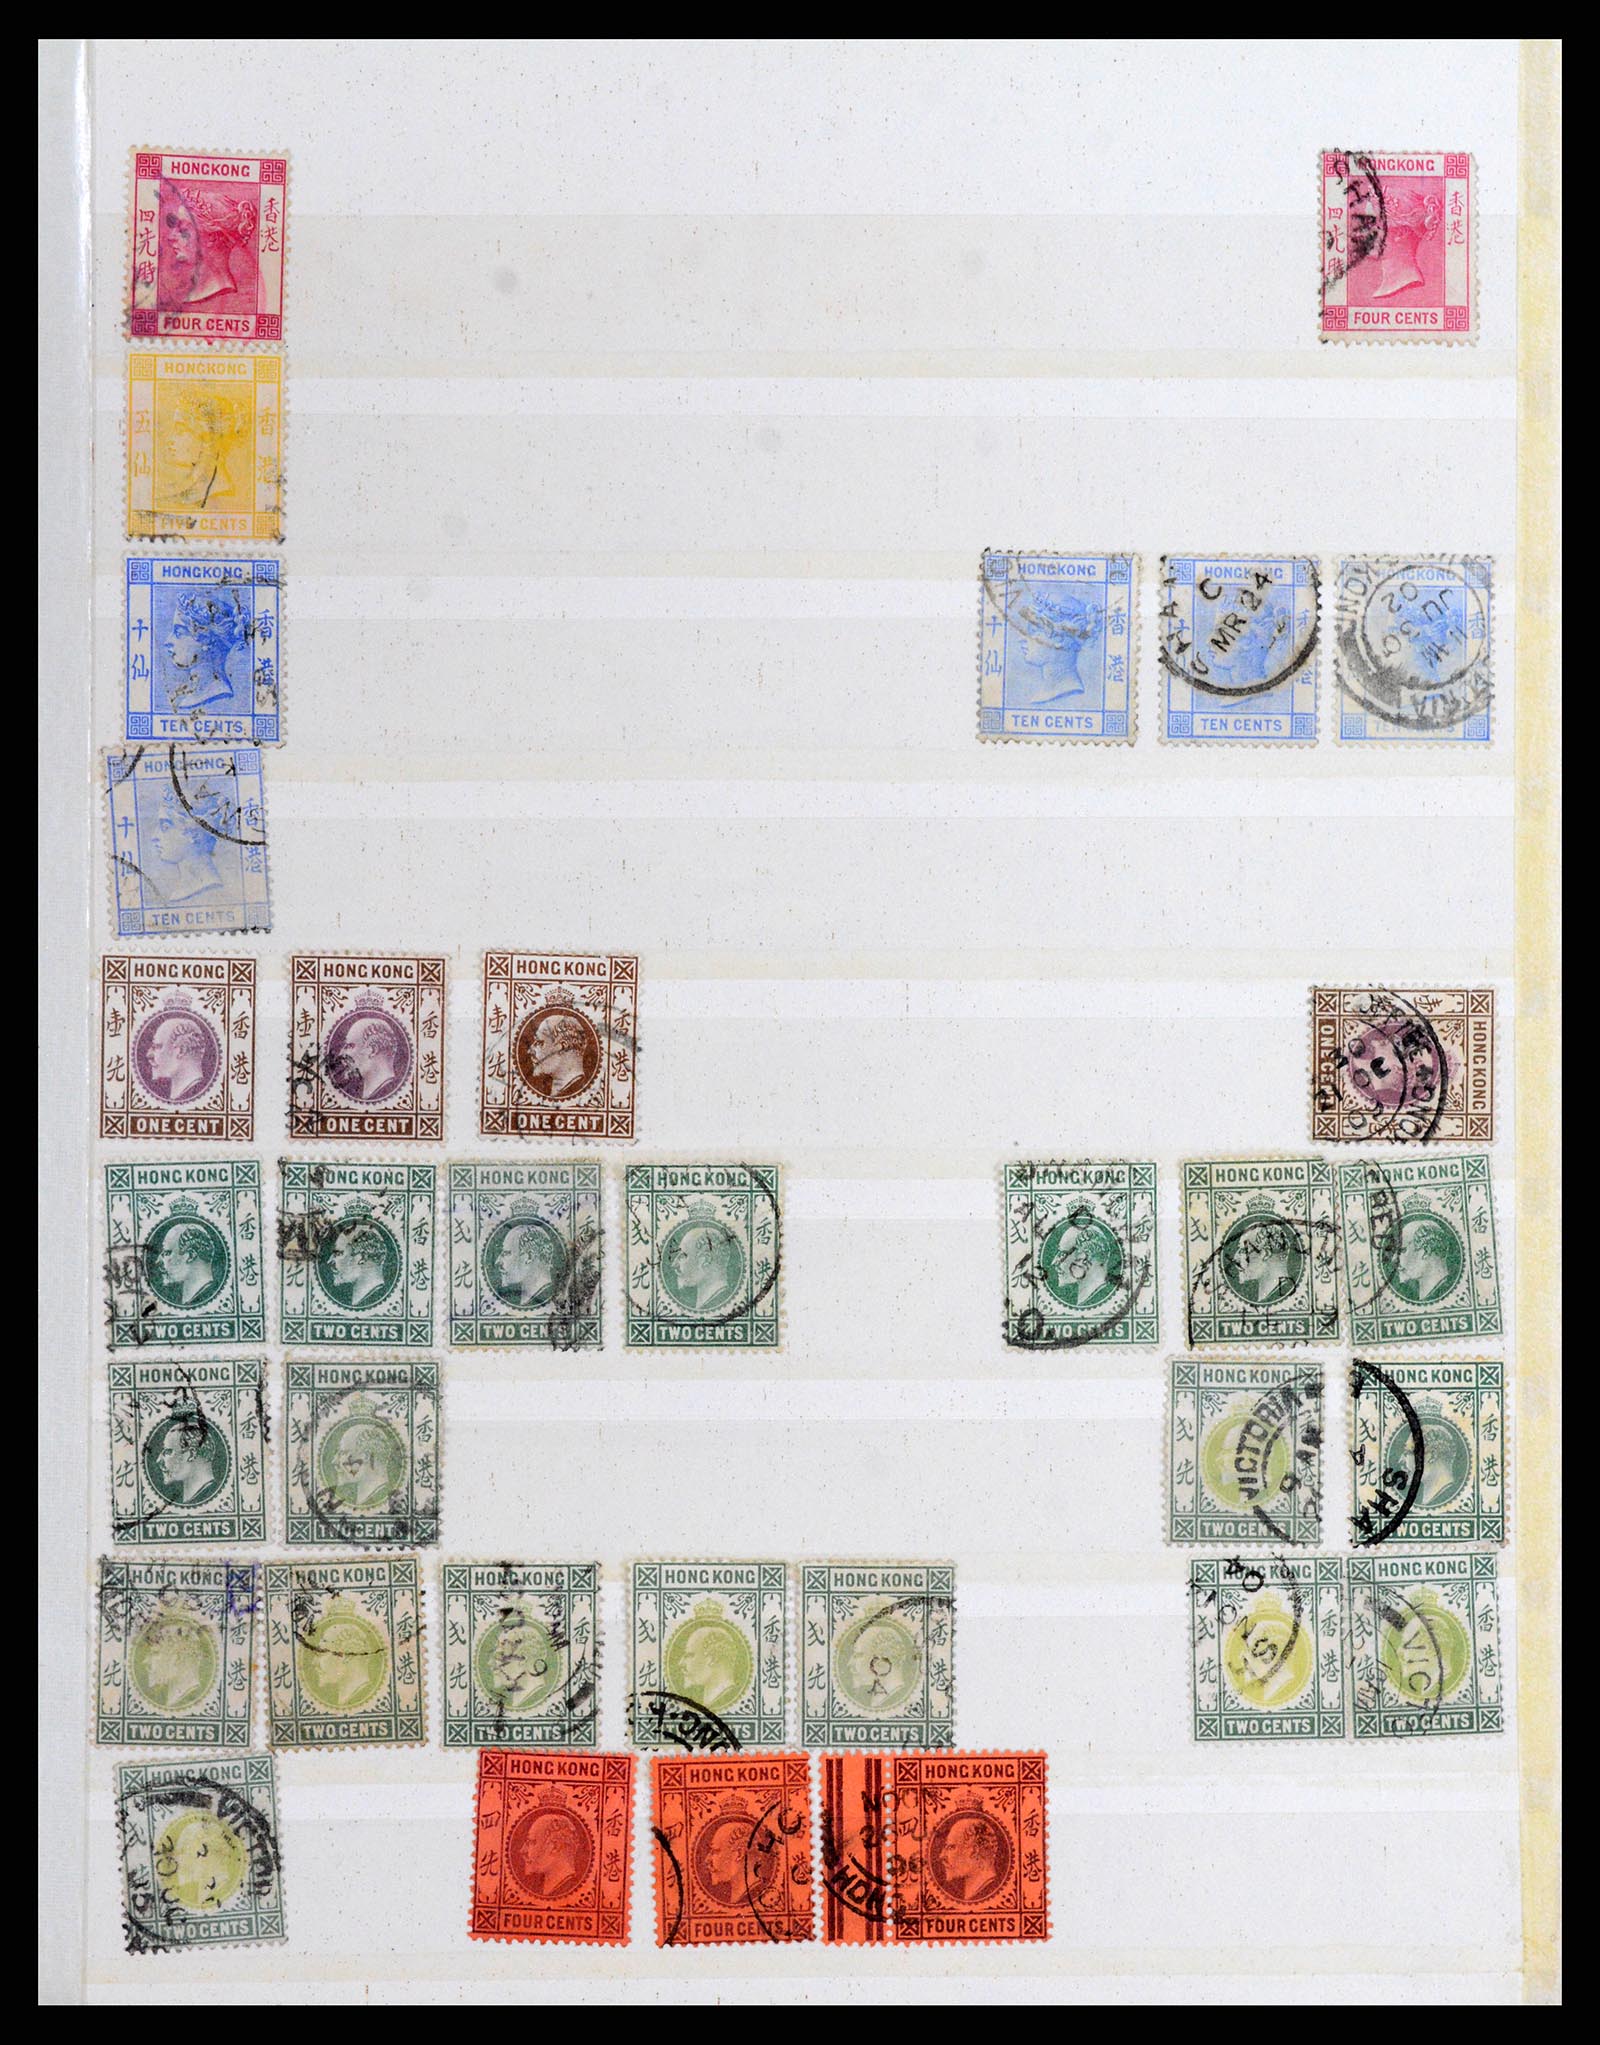 37358 005 - Stamp collection 37358 Hong Kong 1861-1997.